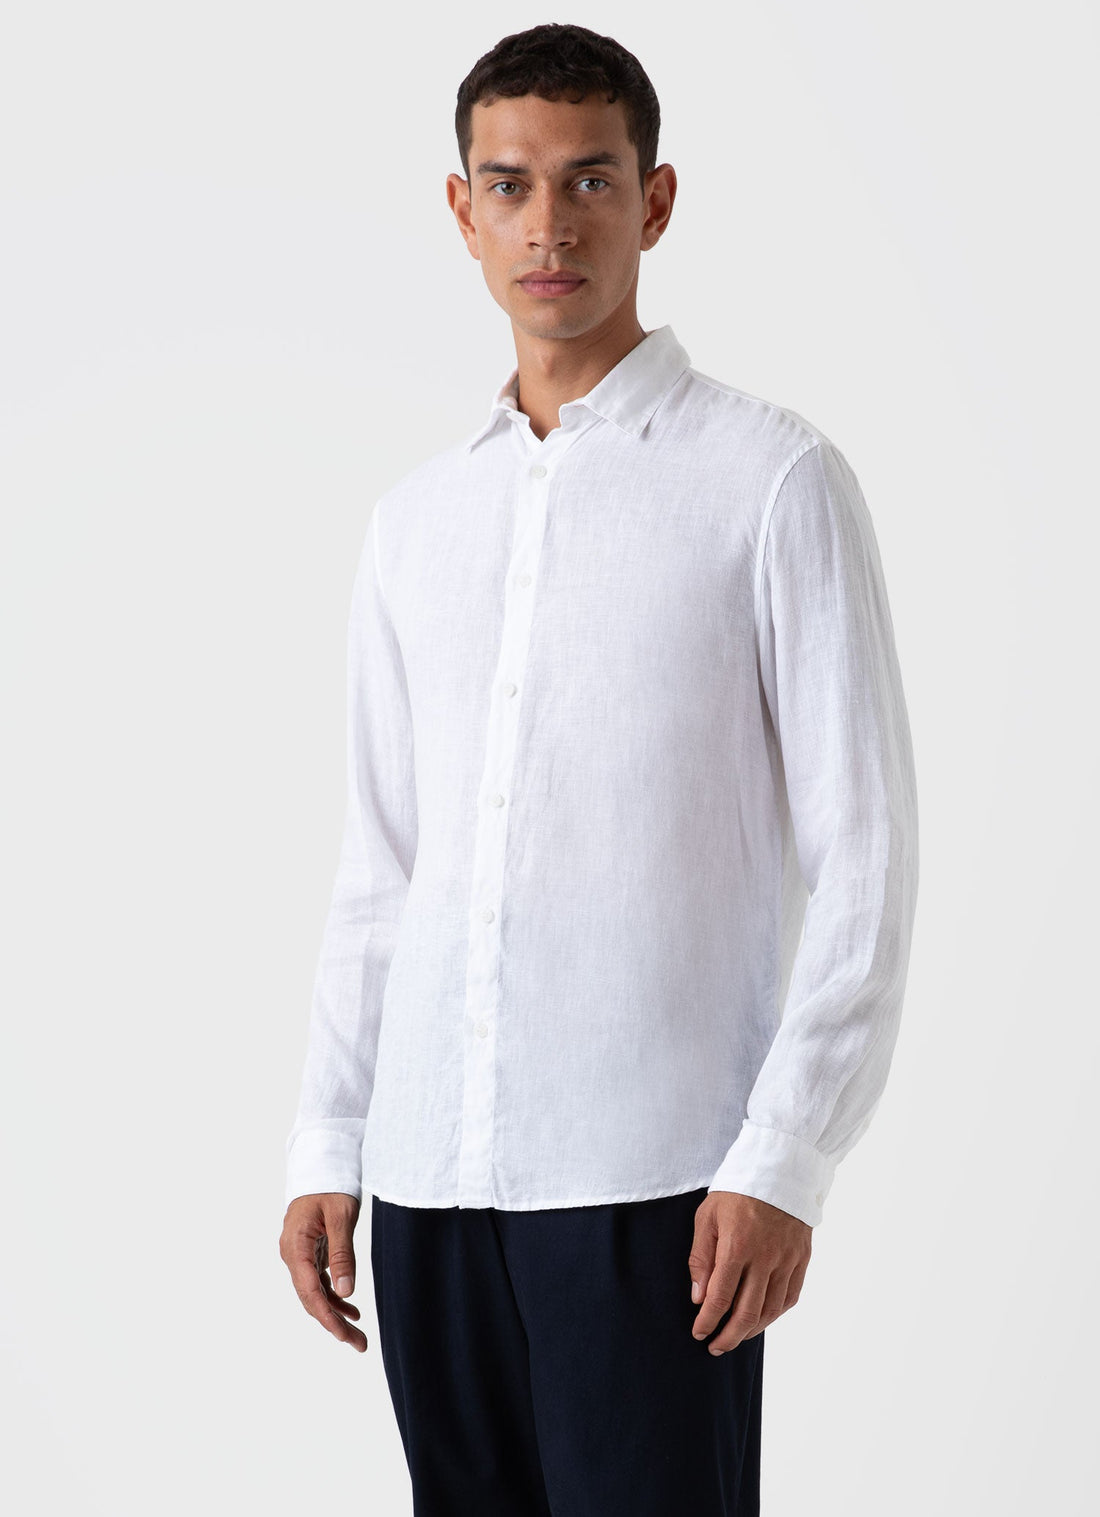 Mens Linen Shirt Dress Shirt White Shirt Wedding Linen -  Israel